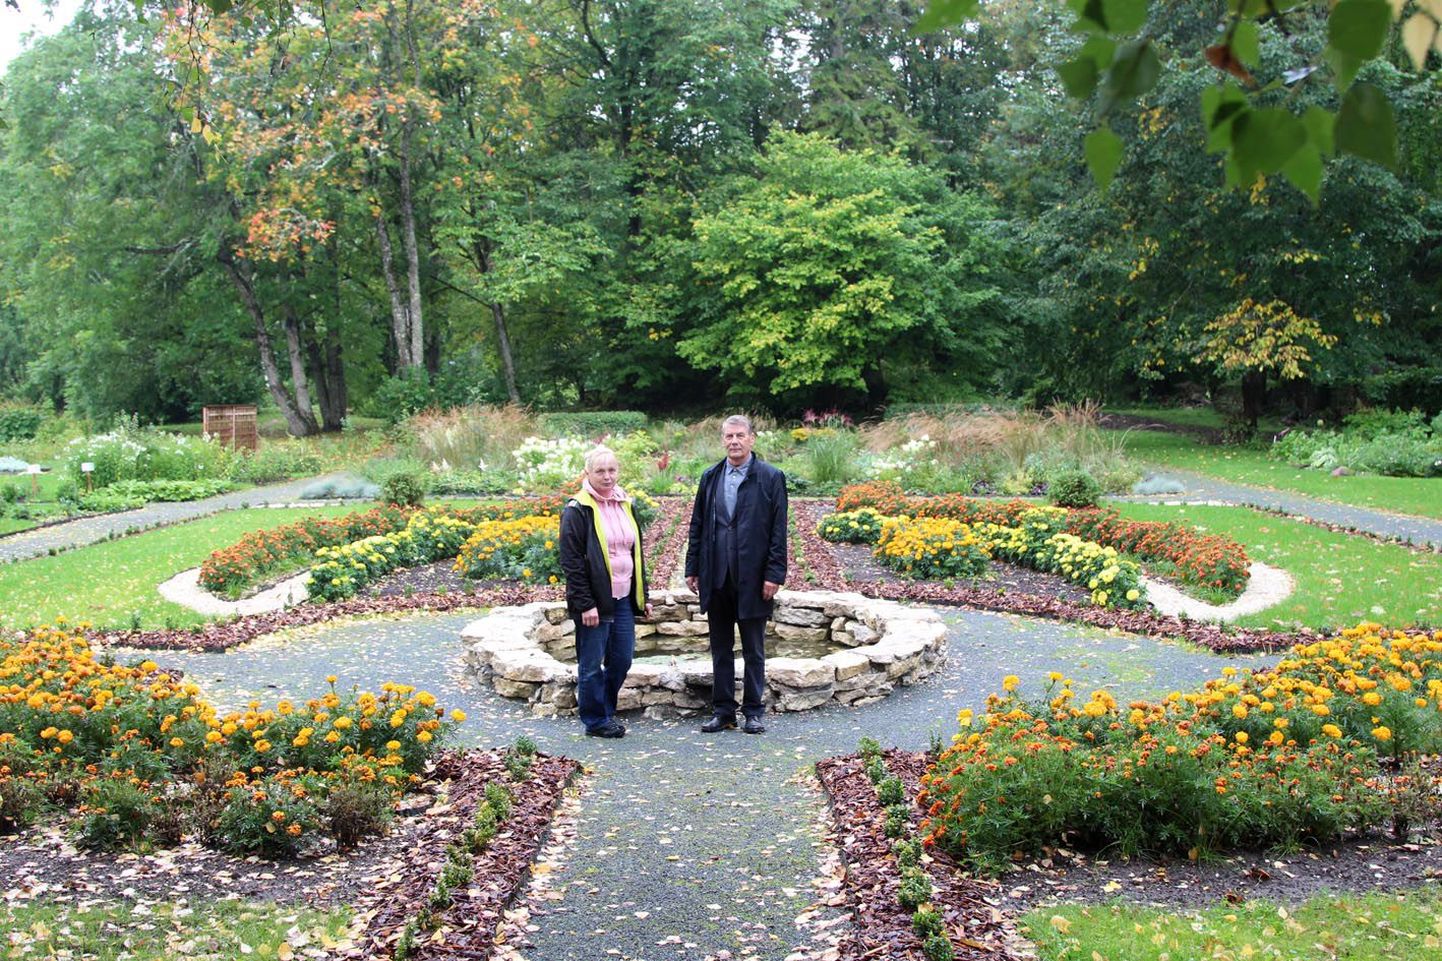 Koigi mõisa aed ja park ei ole veel kaugeltki valmis, kinnitavad kooli direktor Arvo Kangas ja aednik Helle Opivalov. Nelja ajastut tutvustav aed on nende sõnul innustuseks edasiste plaanide elluviimisel.